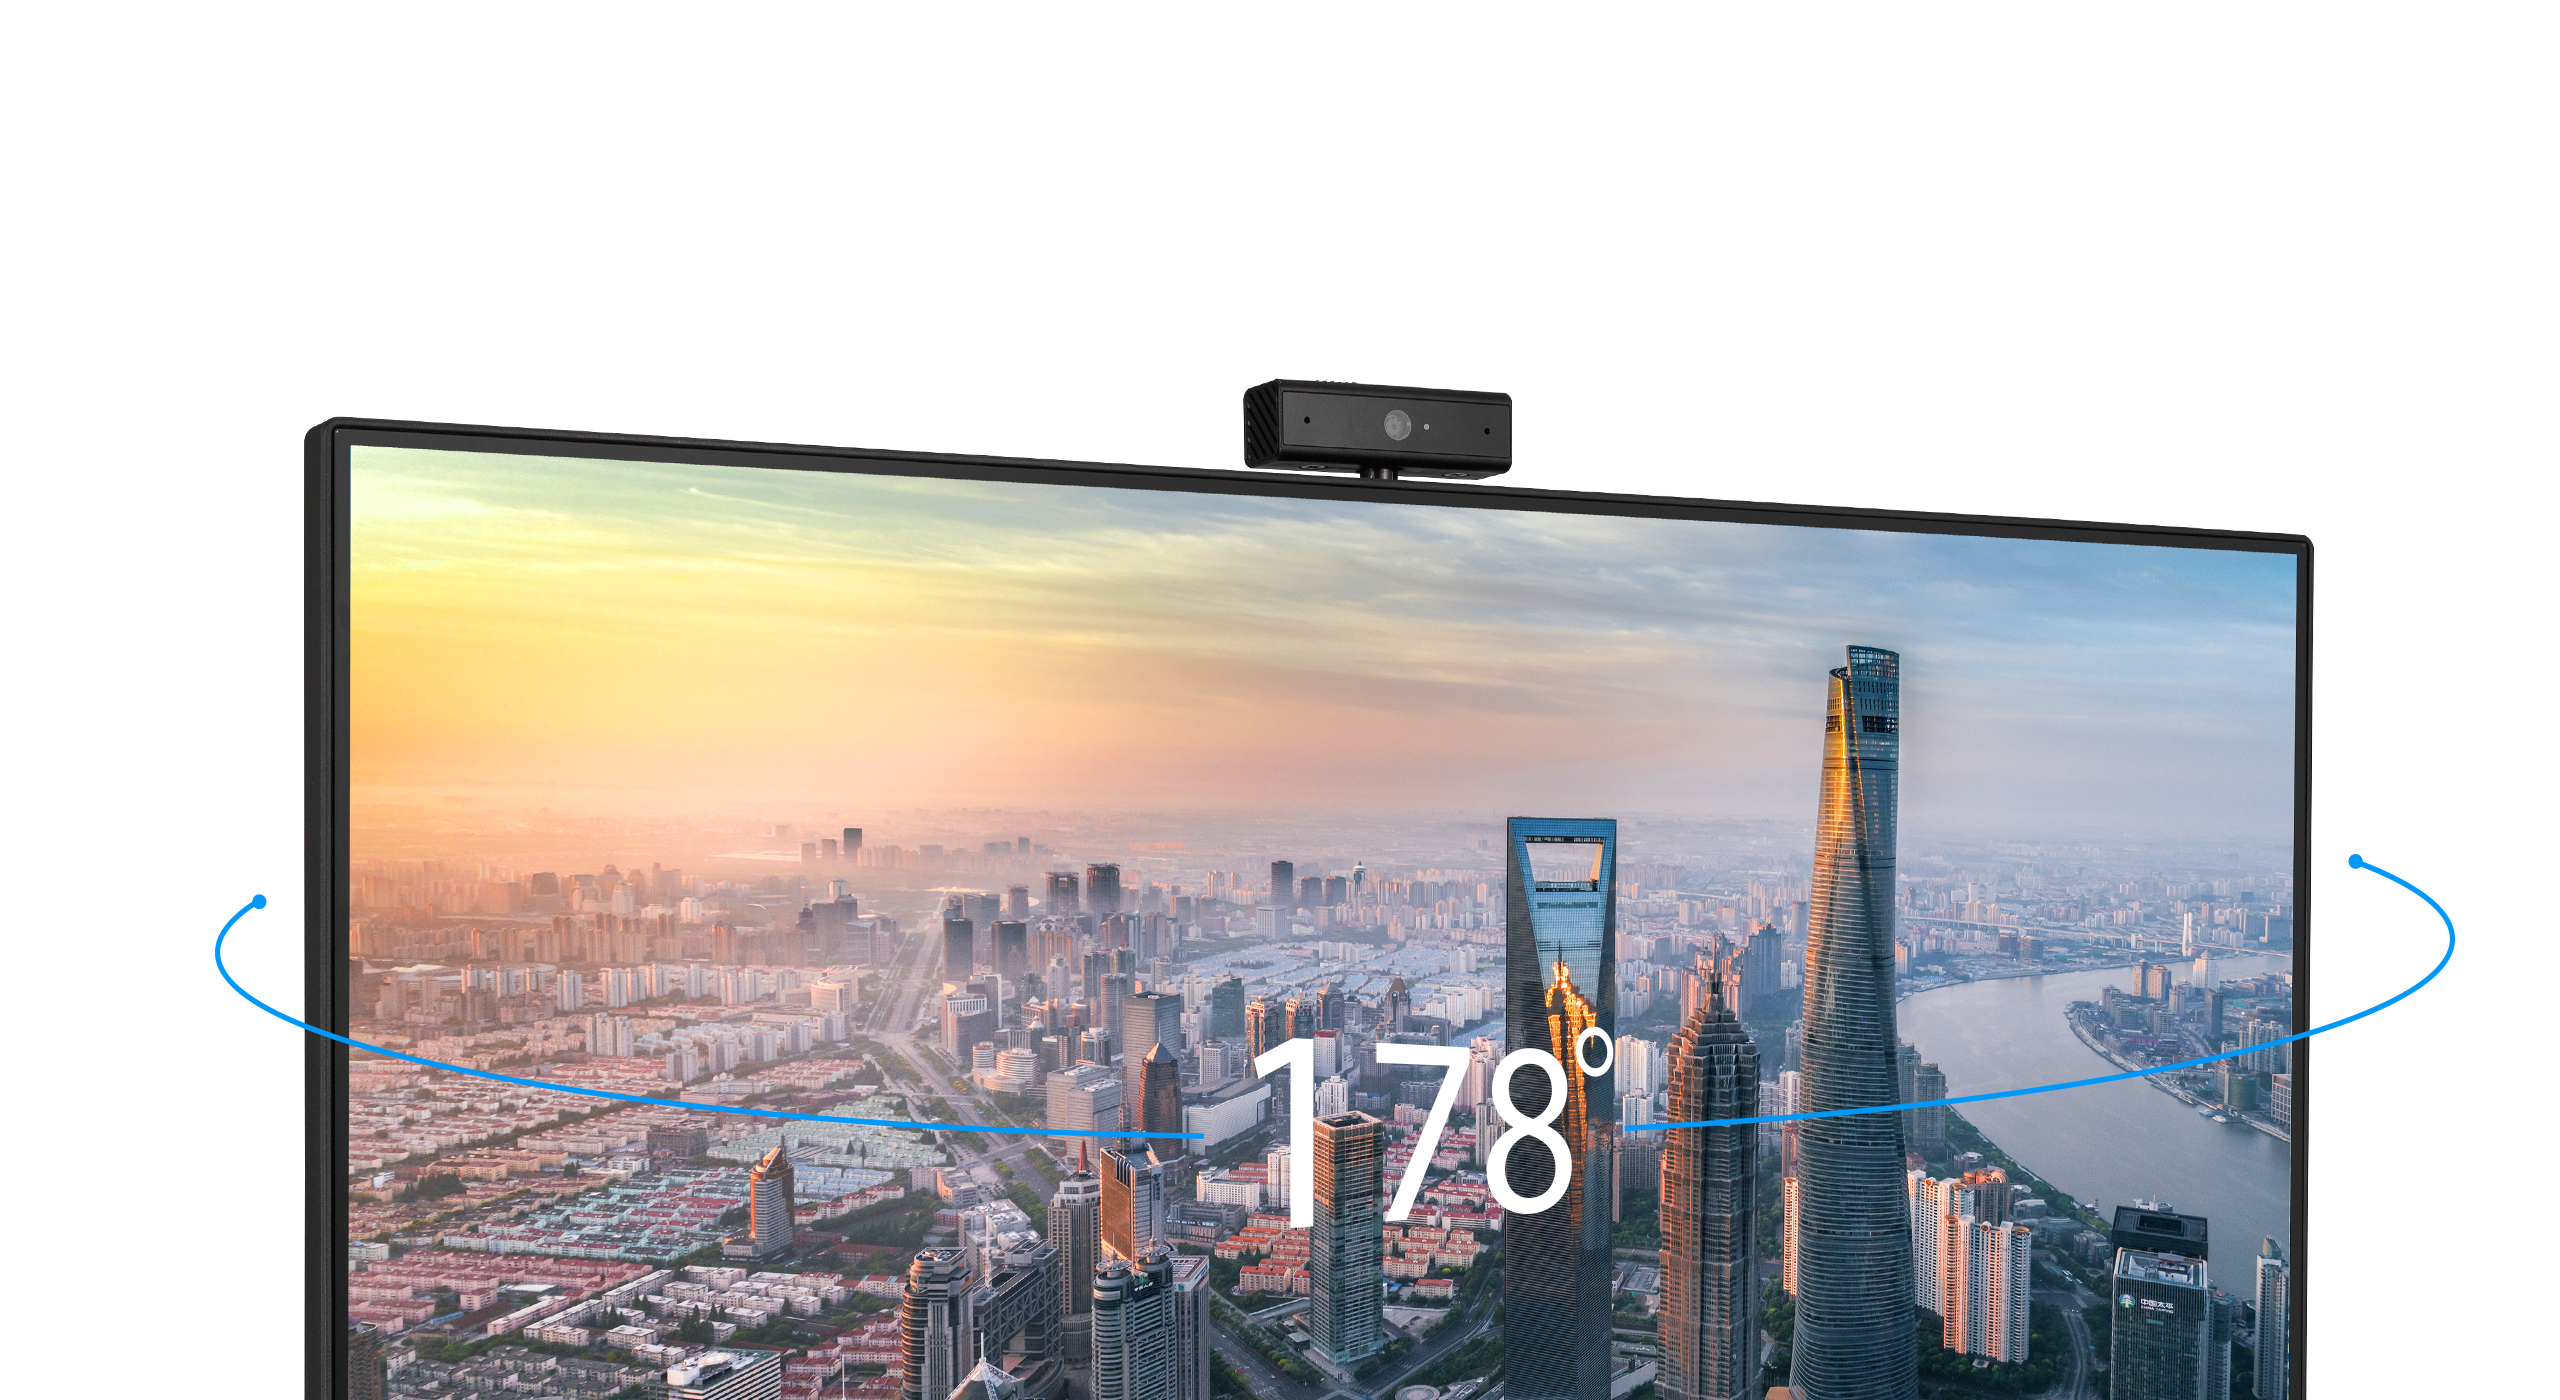 Le BE279QSK offre une résolution Full HD pour une clarté exceptionnelle.